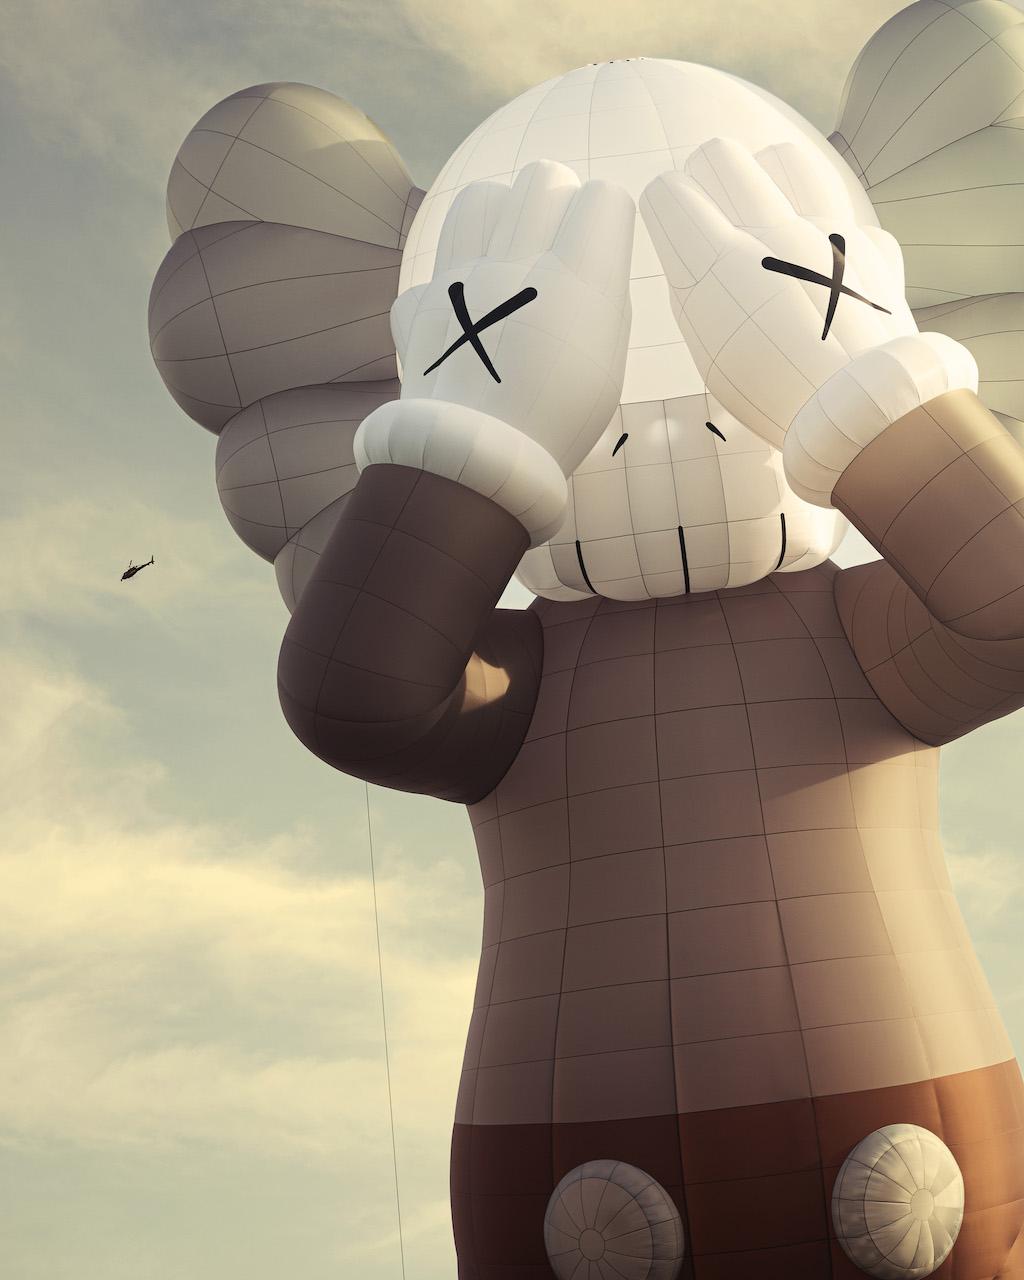 Kaws Unveils a 42-Meter Tall Companion Hot-air Balloon